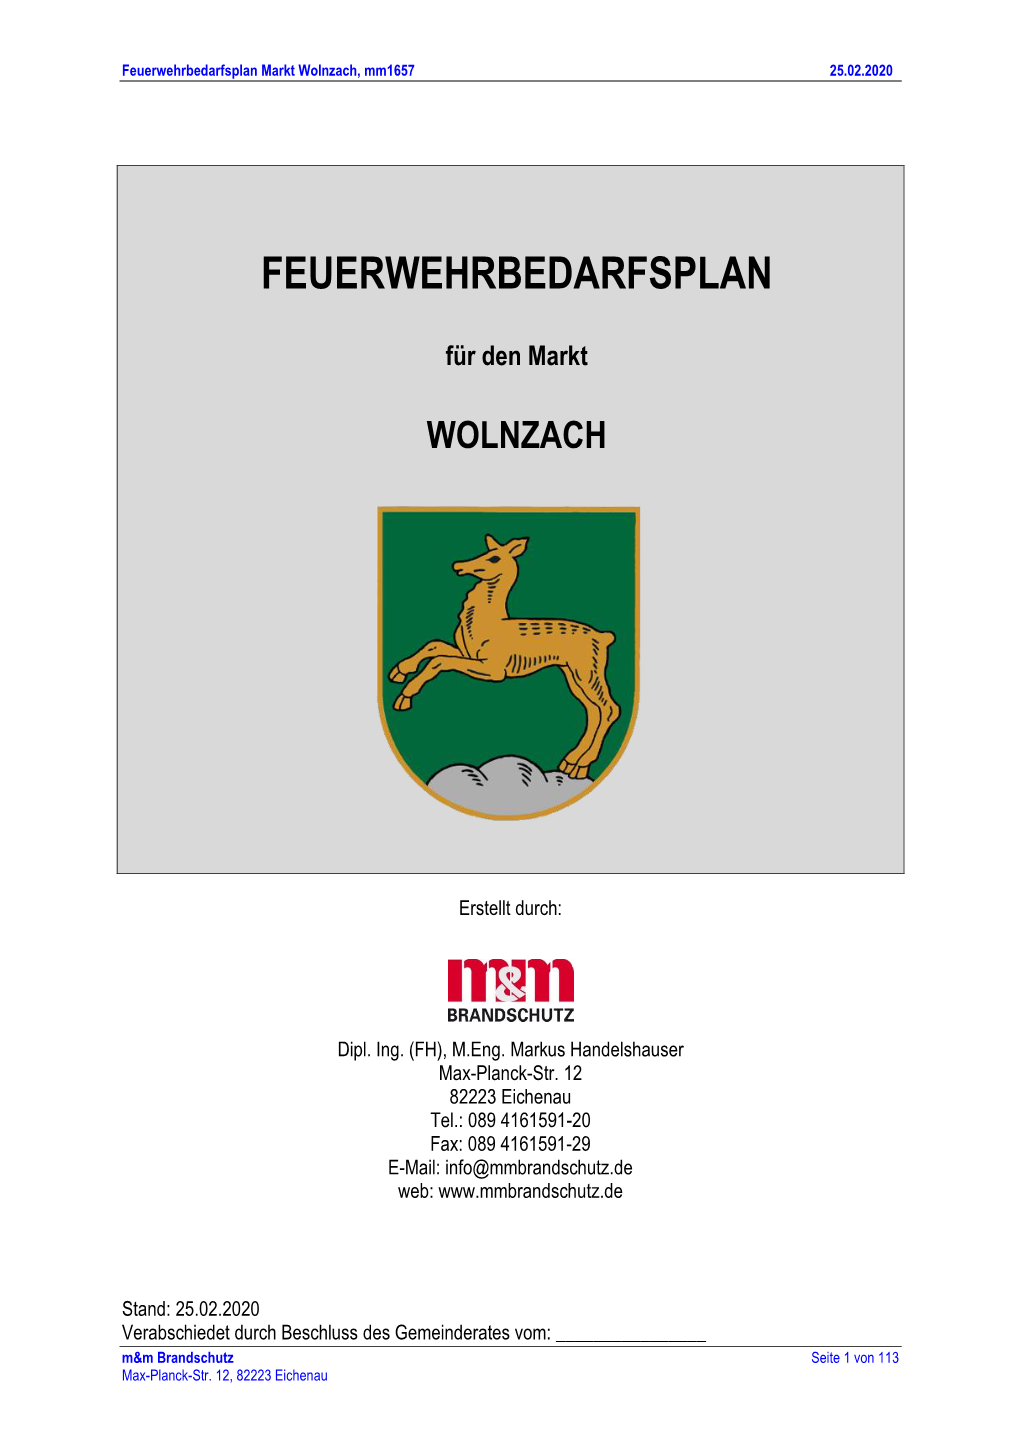 Feuerwehrbedarfsplan Markt Wolnzach, Mm1657 25.02.2020